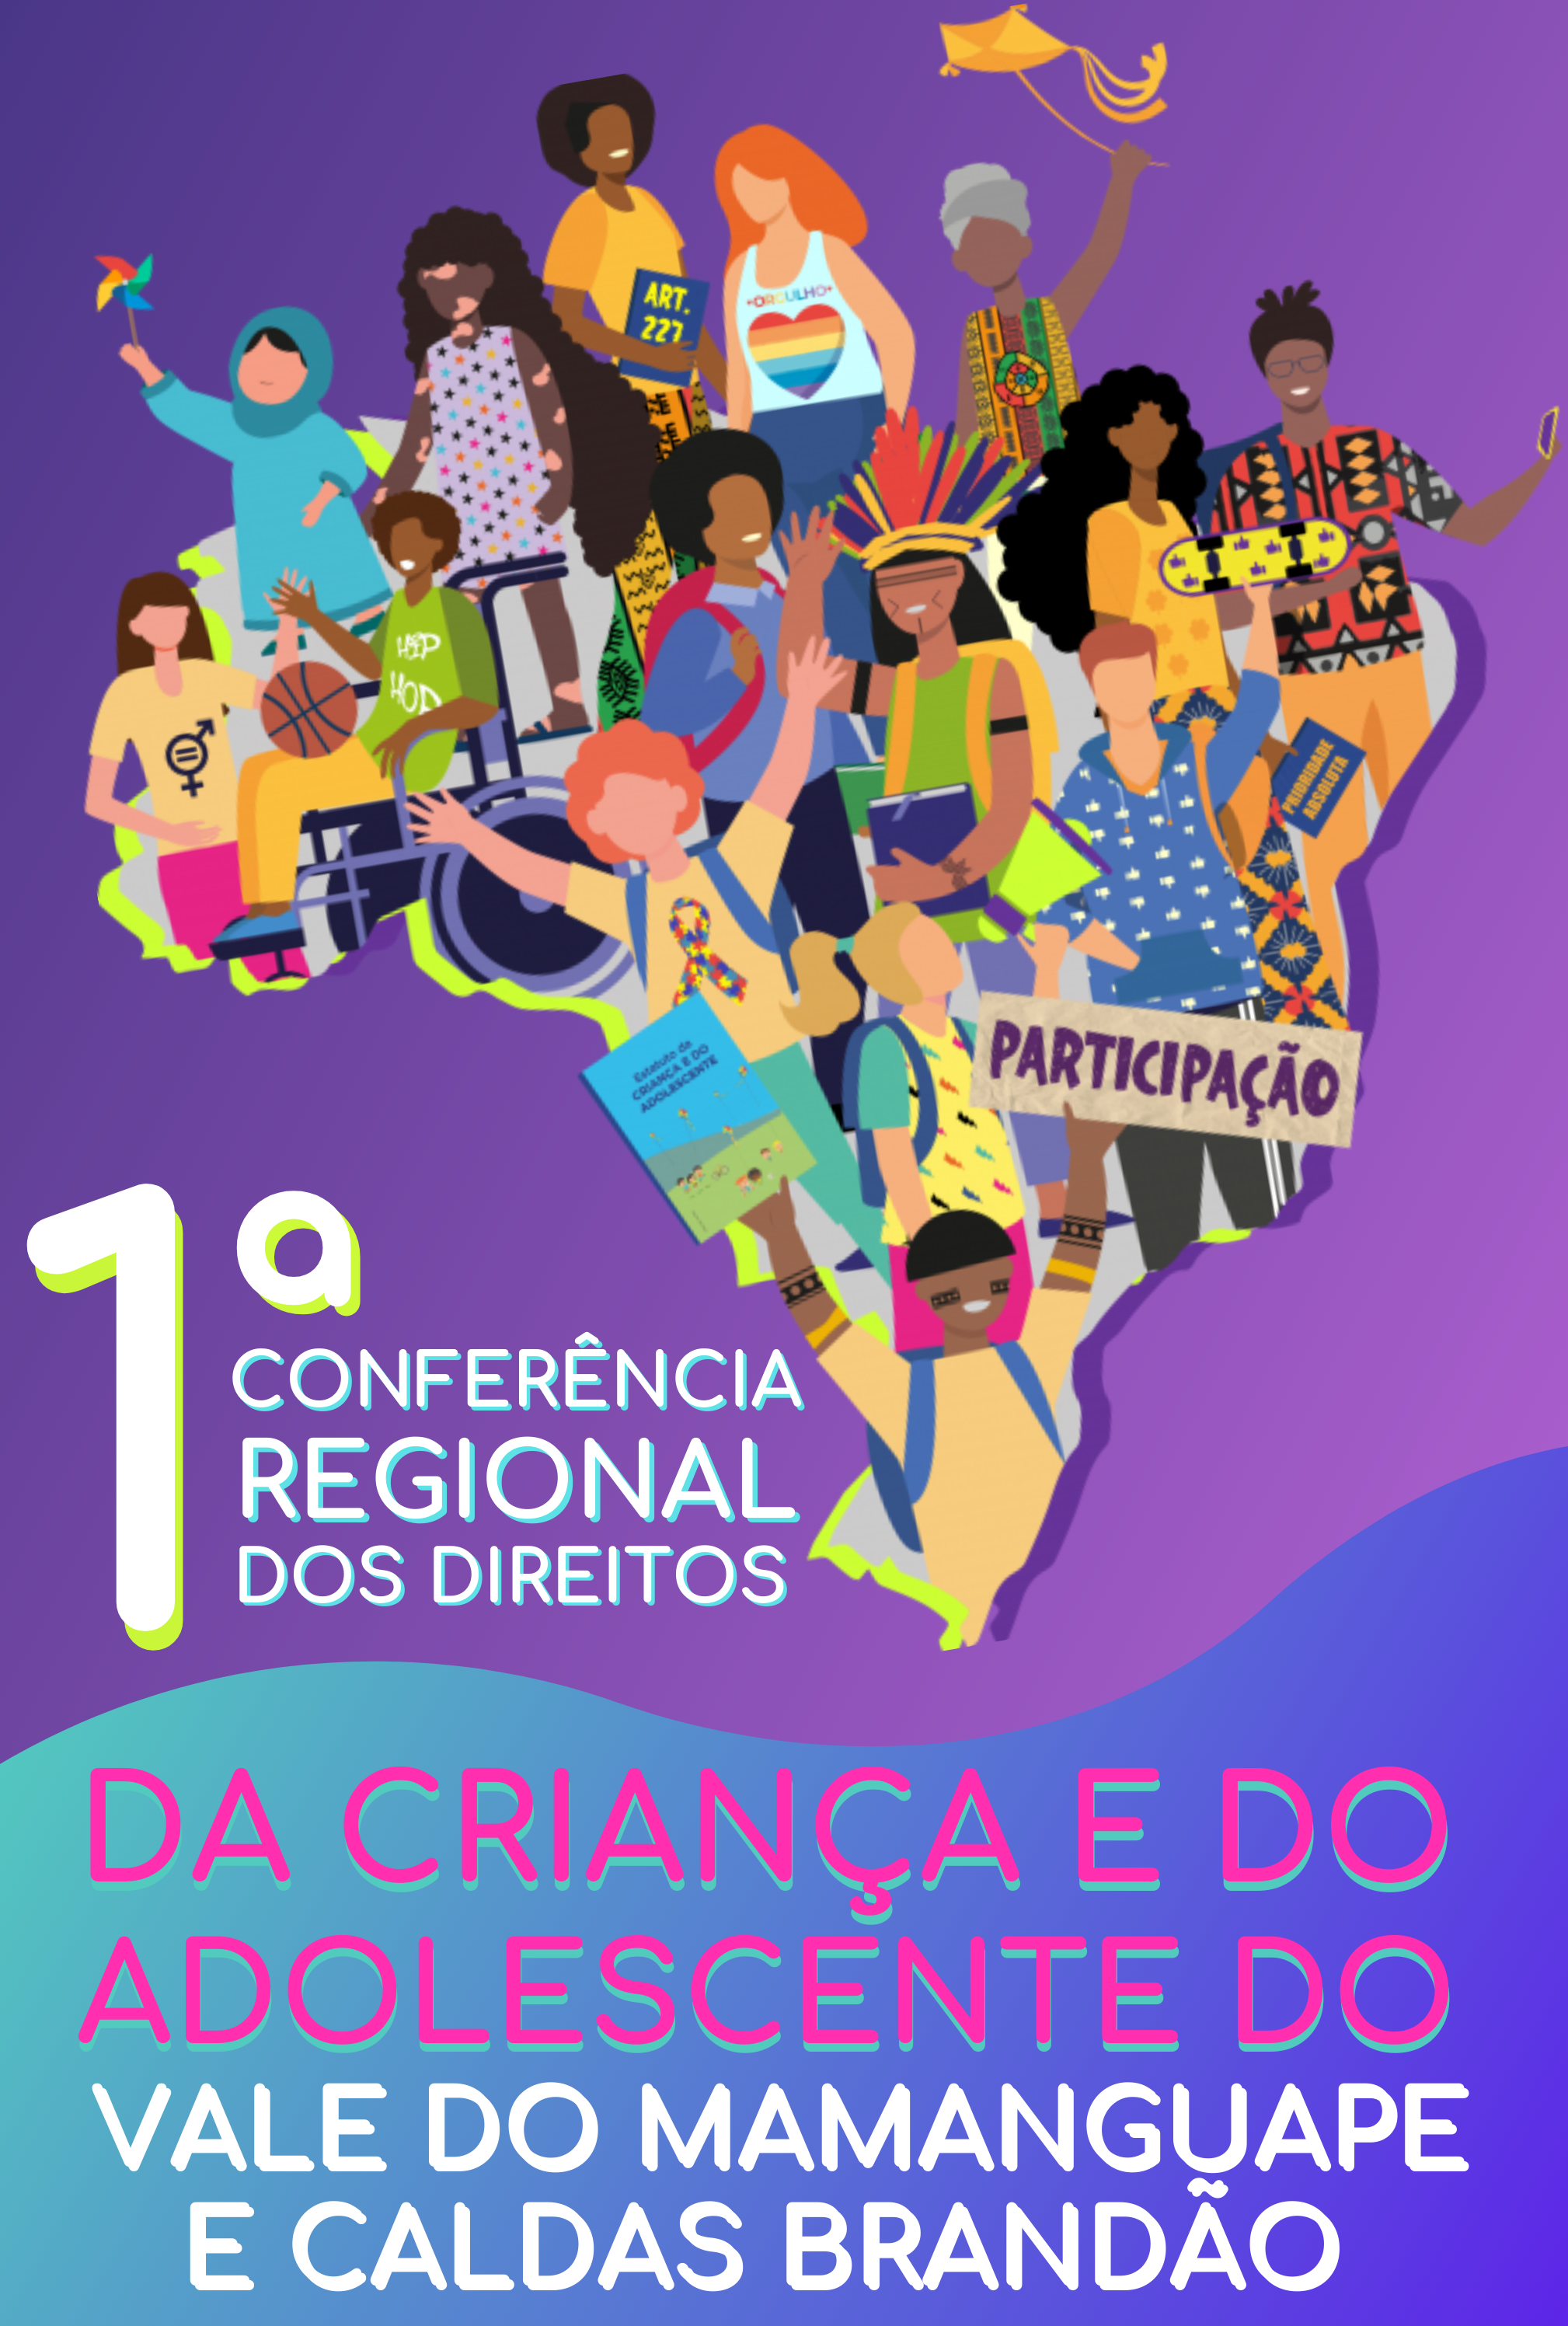 Mamanguape participará da 1ª Conferência Regional dos Direitos da Criança e do Adolescente